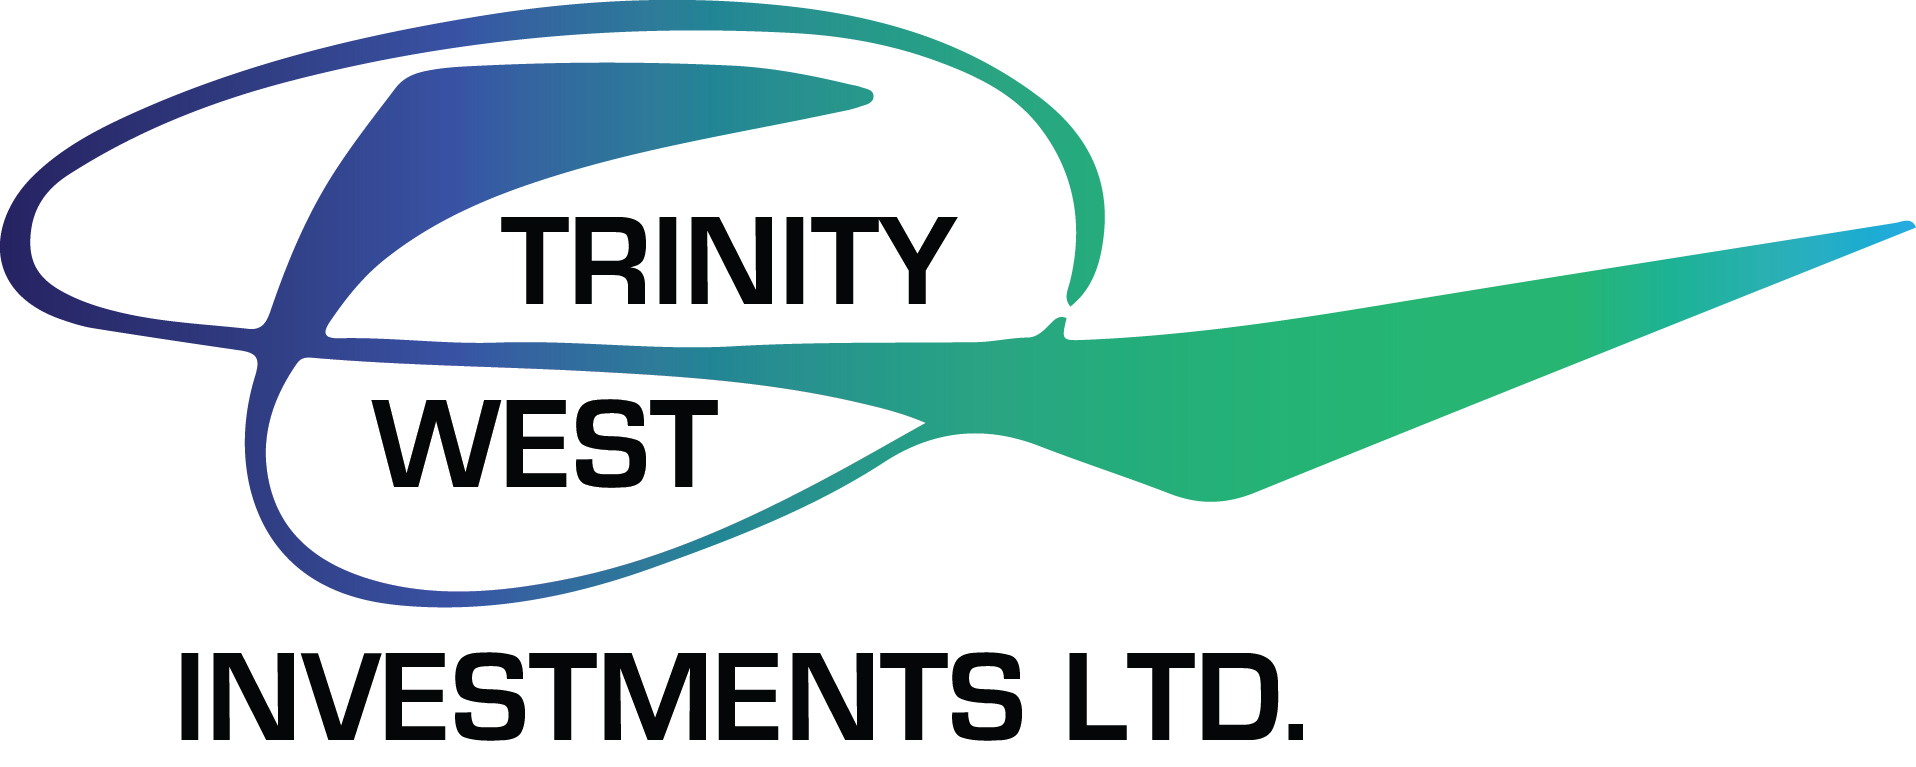 Trinity West logo.jpg